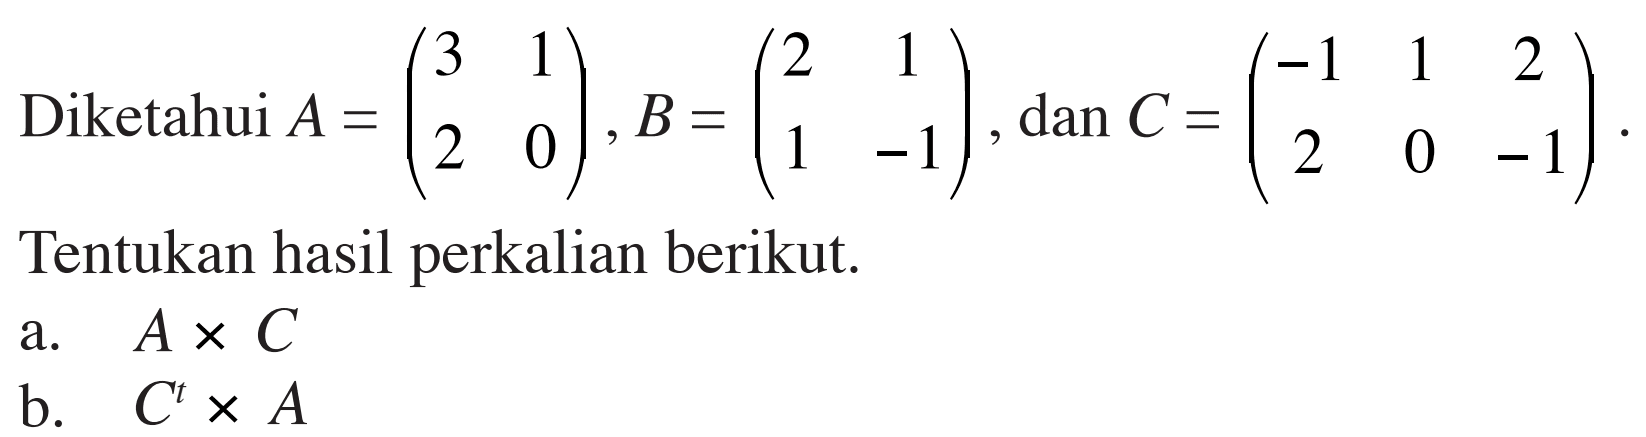 Diketahui A=(3 1 2 0) B=(2 1 1 -1) dan C=(-1 1 2 2 0 -1) Tentukan hasil perkalian berikut. a. AxC b. CxA